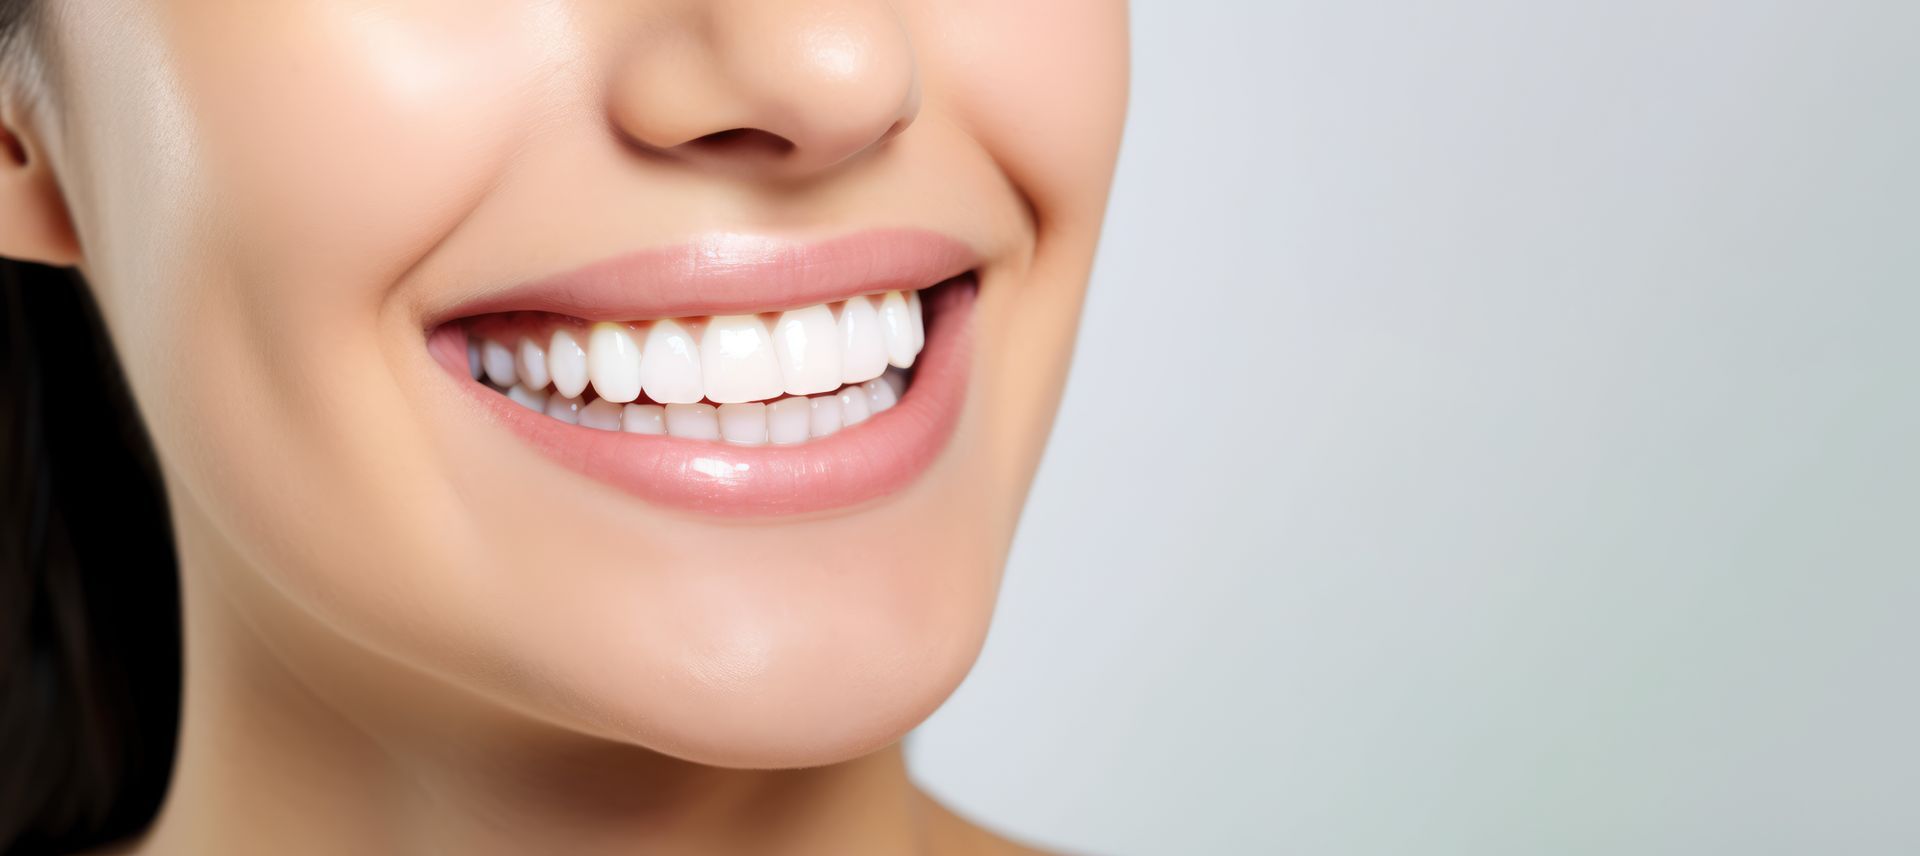 Femme qui sourit après un blanchiment dentaire.